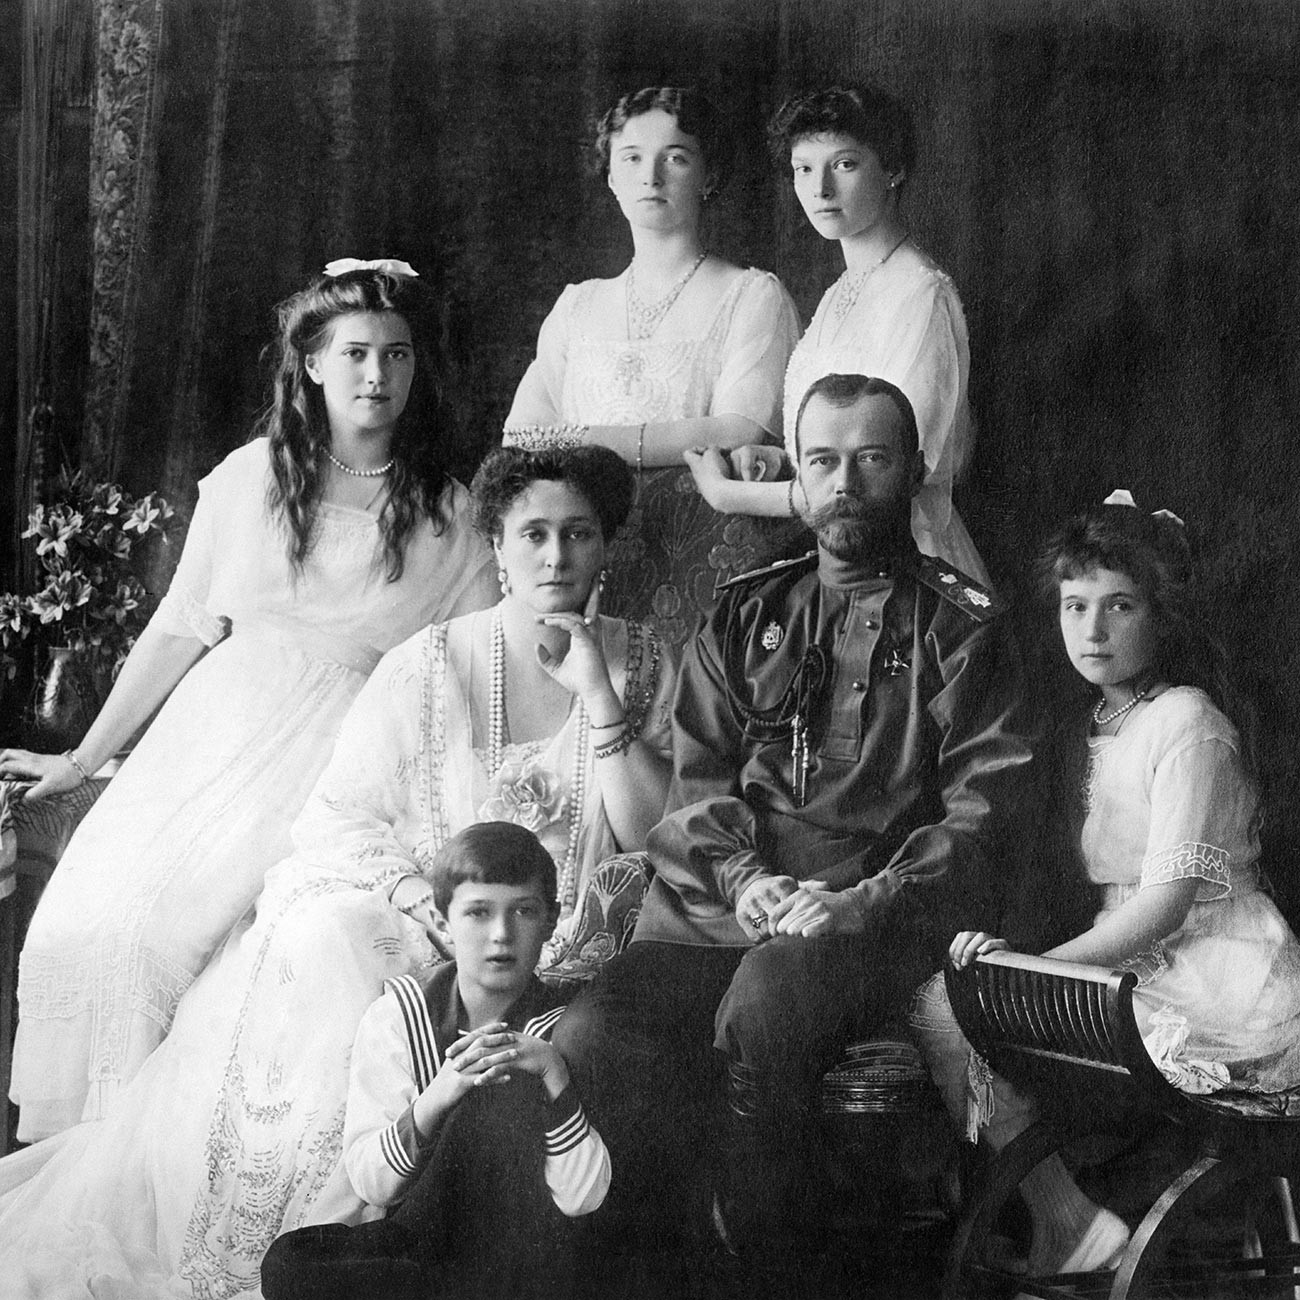 Družina zadnjega carja leta 1913.

